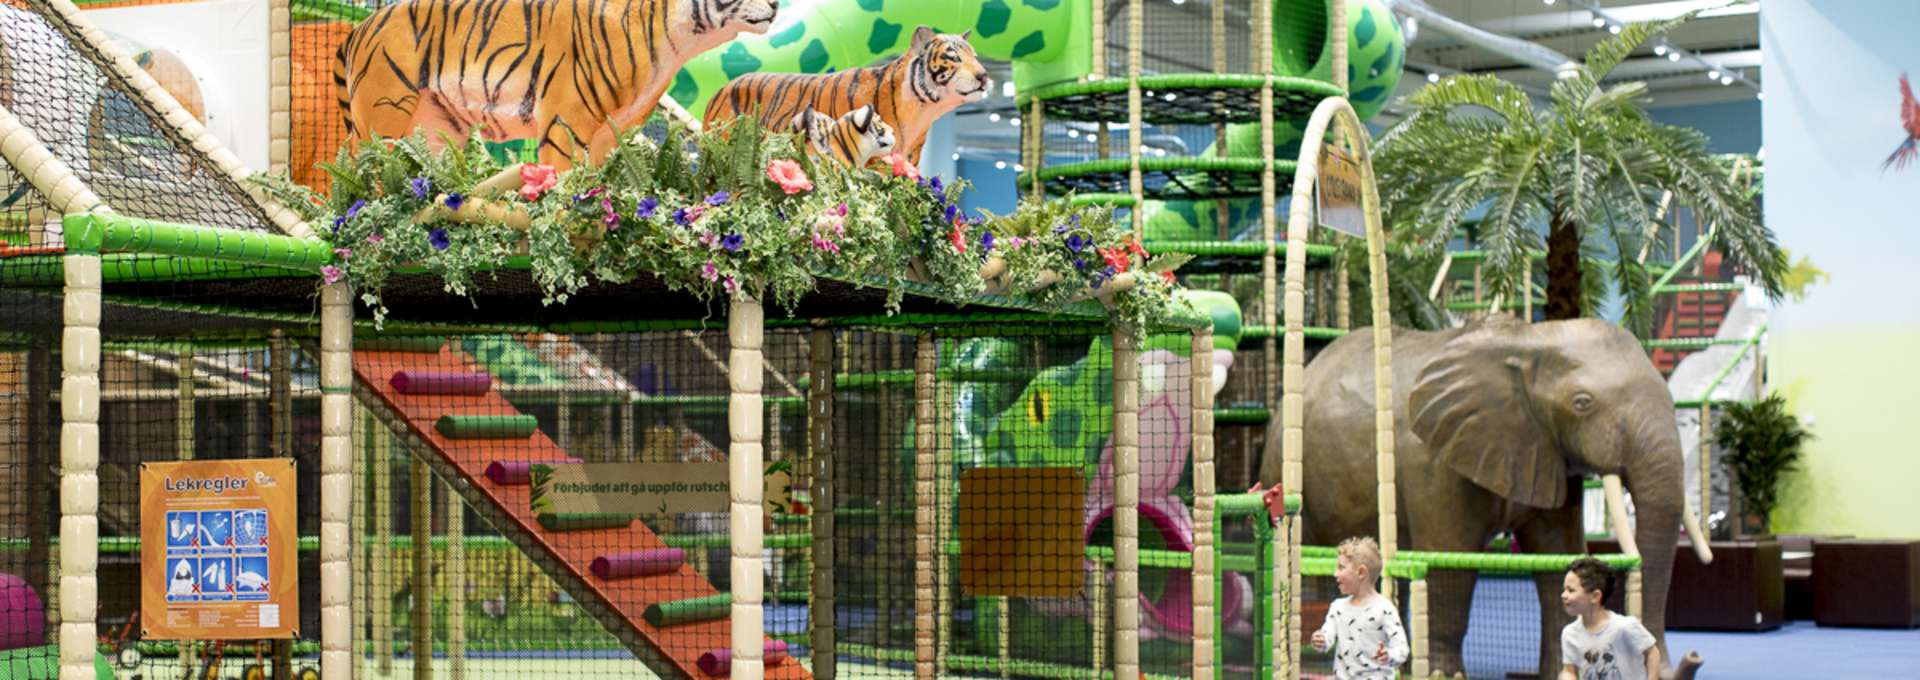 Två små pojkar springer och leker på Leos Lekland. På bilden syns stora färgglada klätterställningar och två tigrar och en stor elefant i plast.